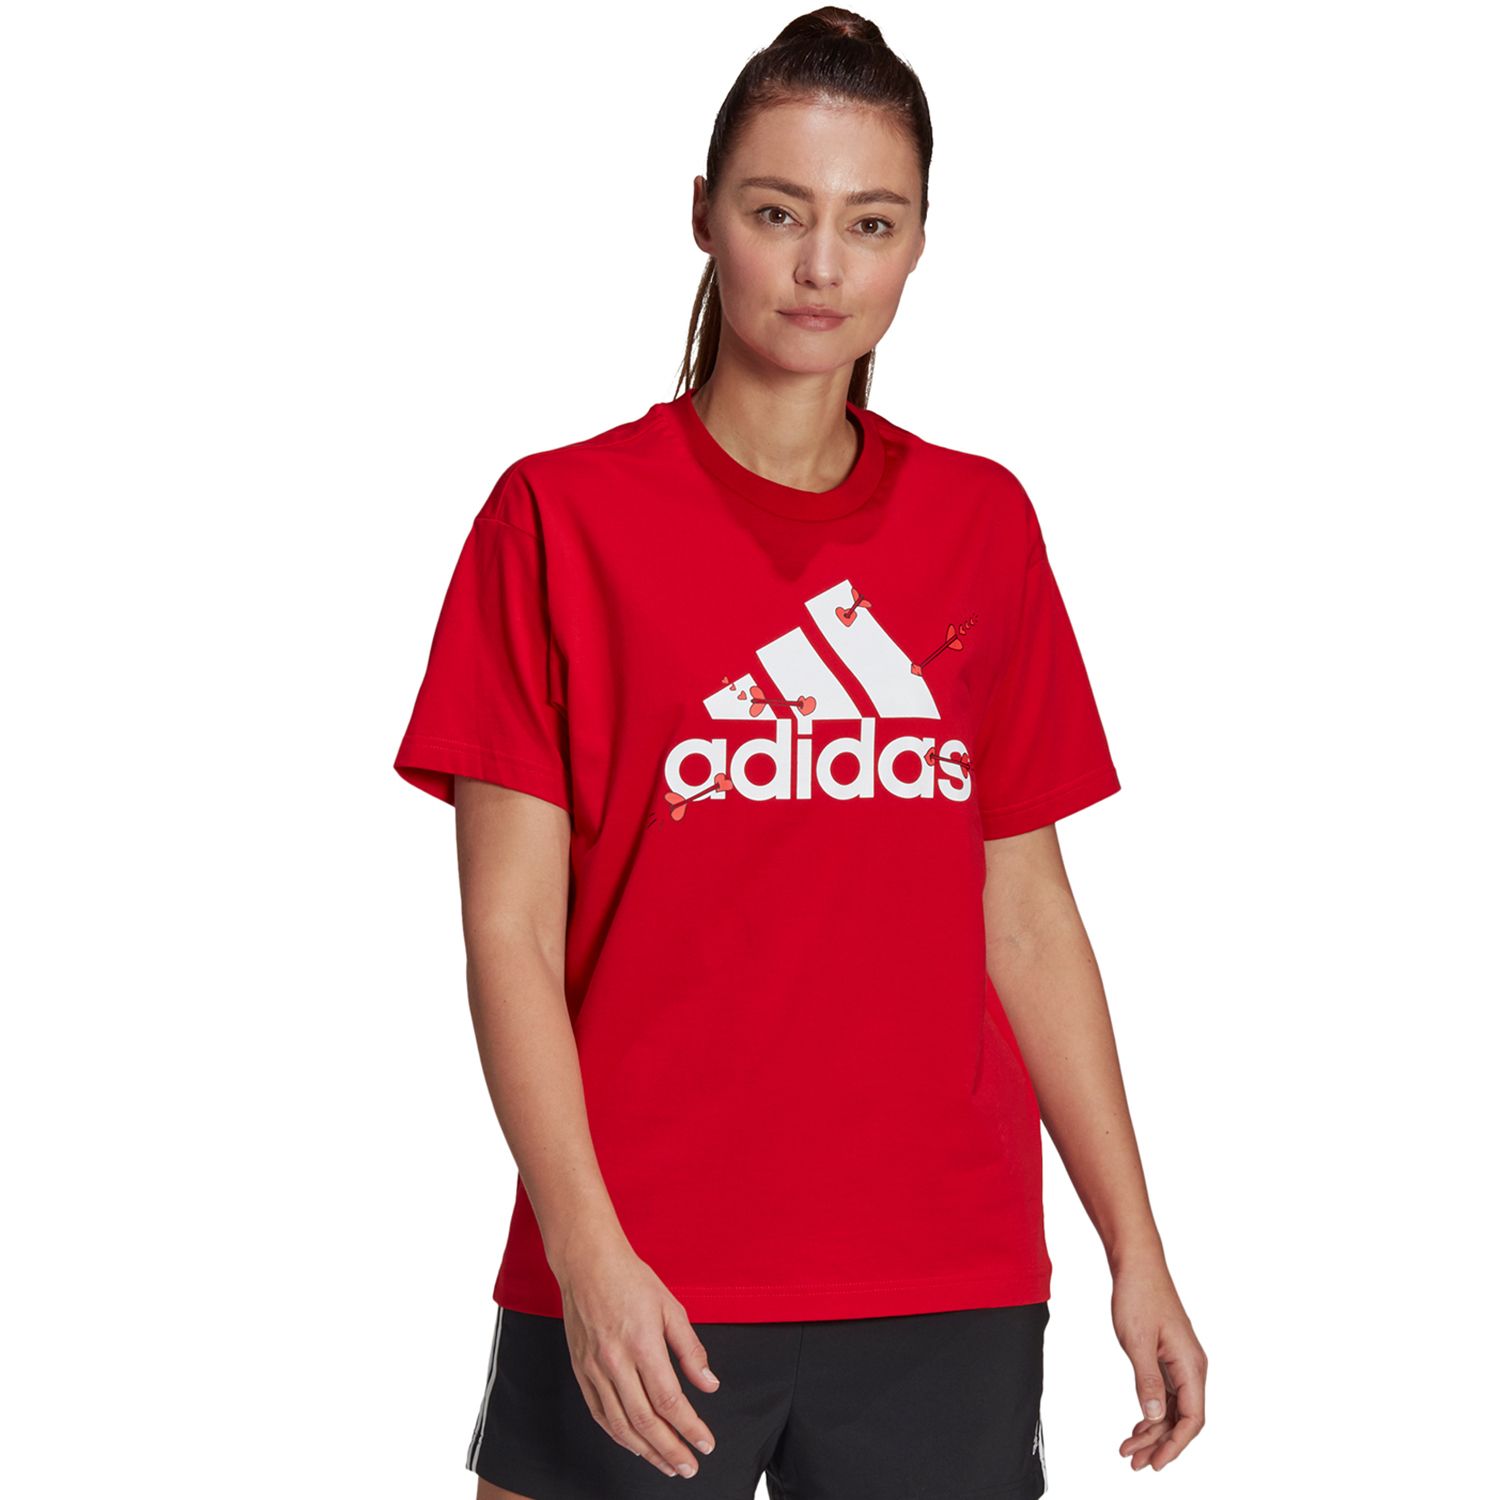 red adidas tshirt